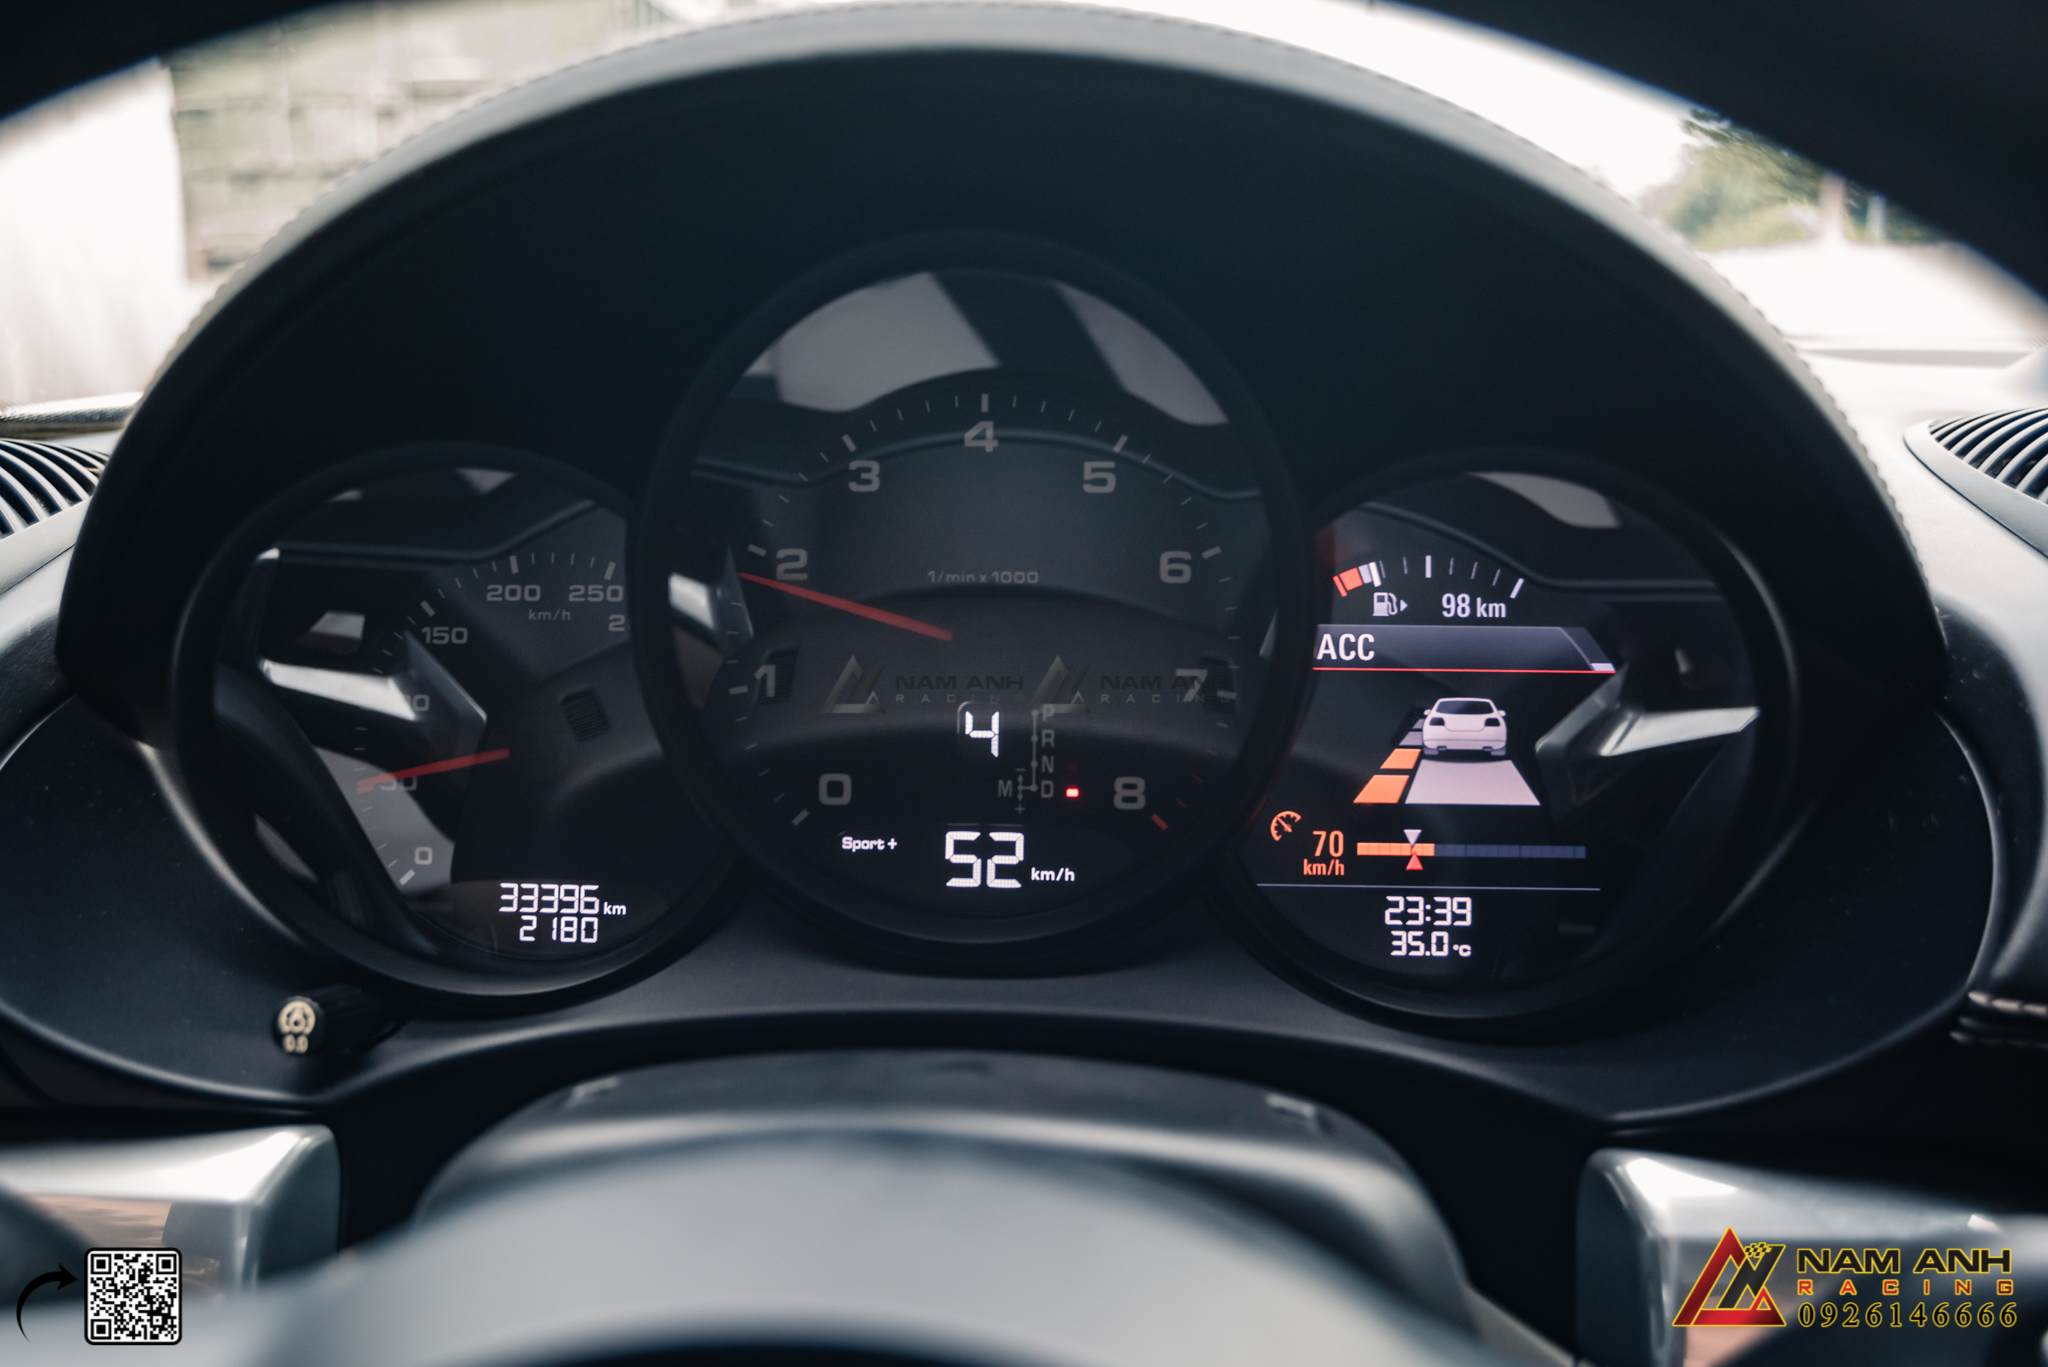 Hệ Thống Adaptive Cruise Control - Phanh Khoảng Cách Trên Xe Porsche: An Toàn và Tiện Nghi Tối Đa